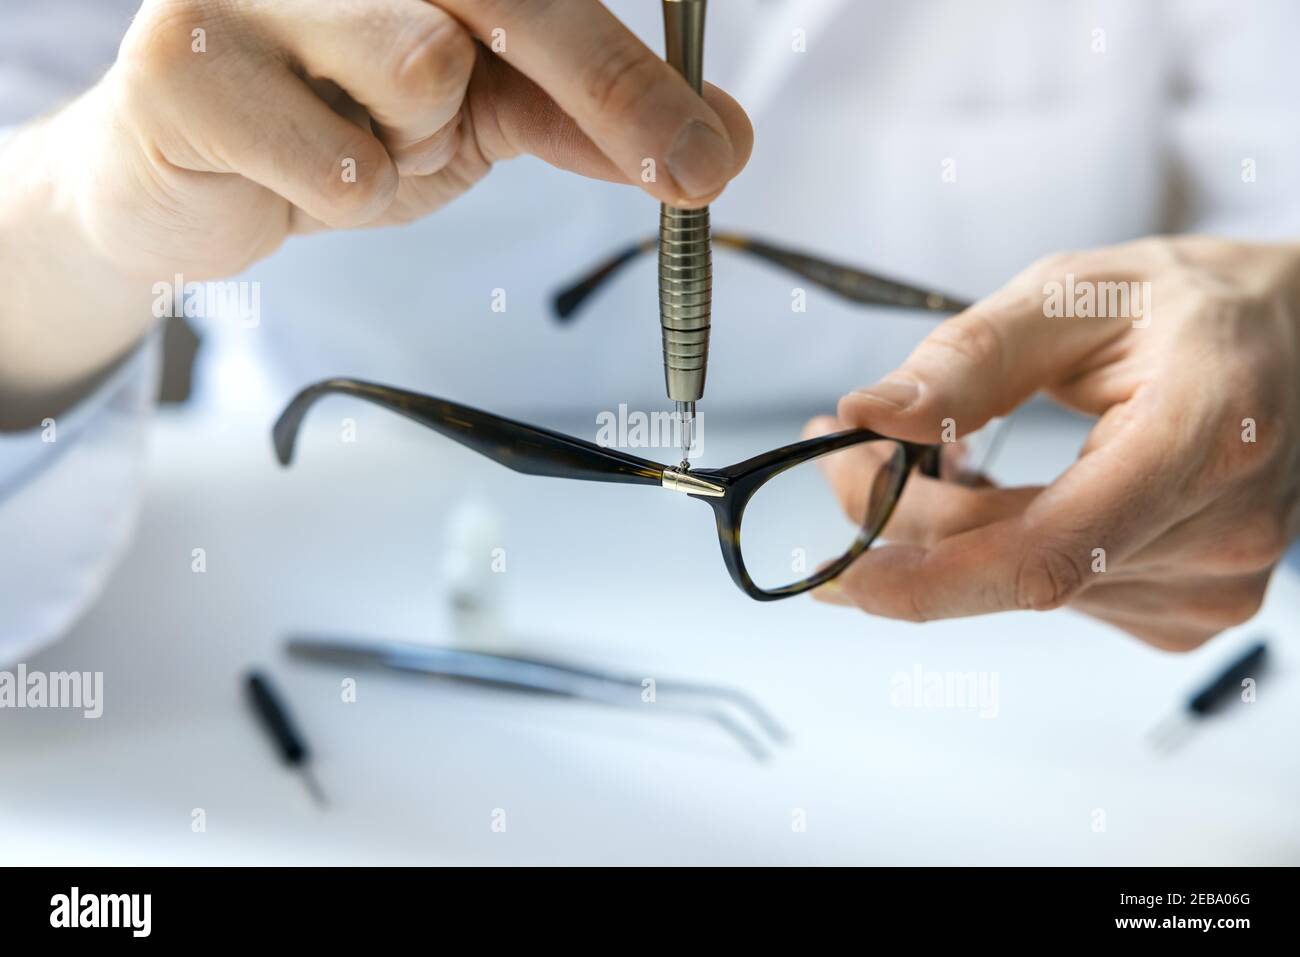 service de réparation de lunettes - technicien en optique réparant le cadre de lunettes avec tournevis Banque D'Images